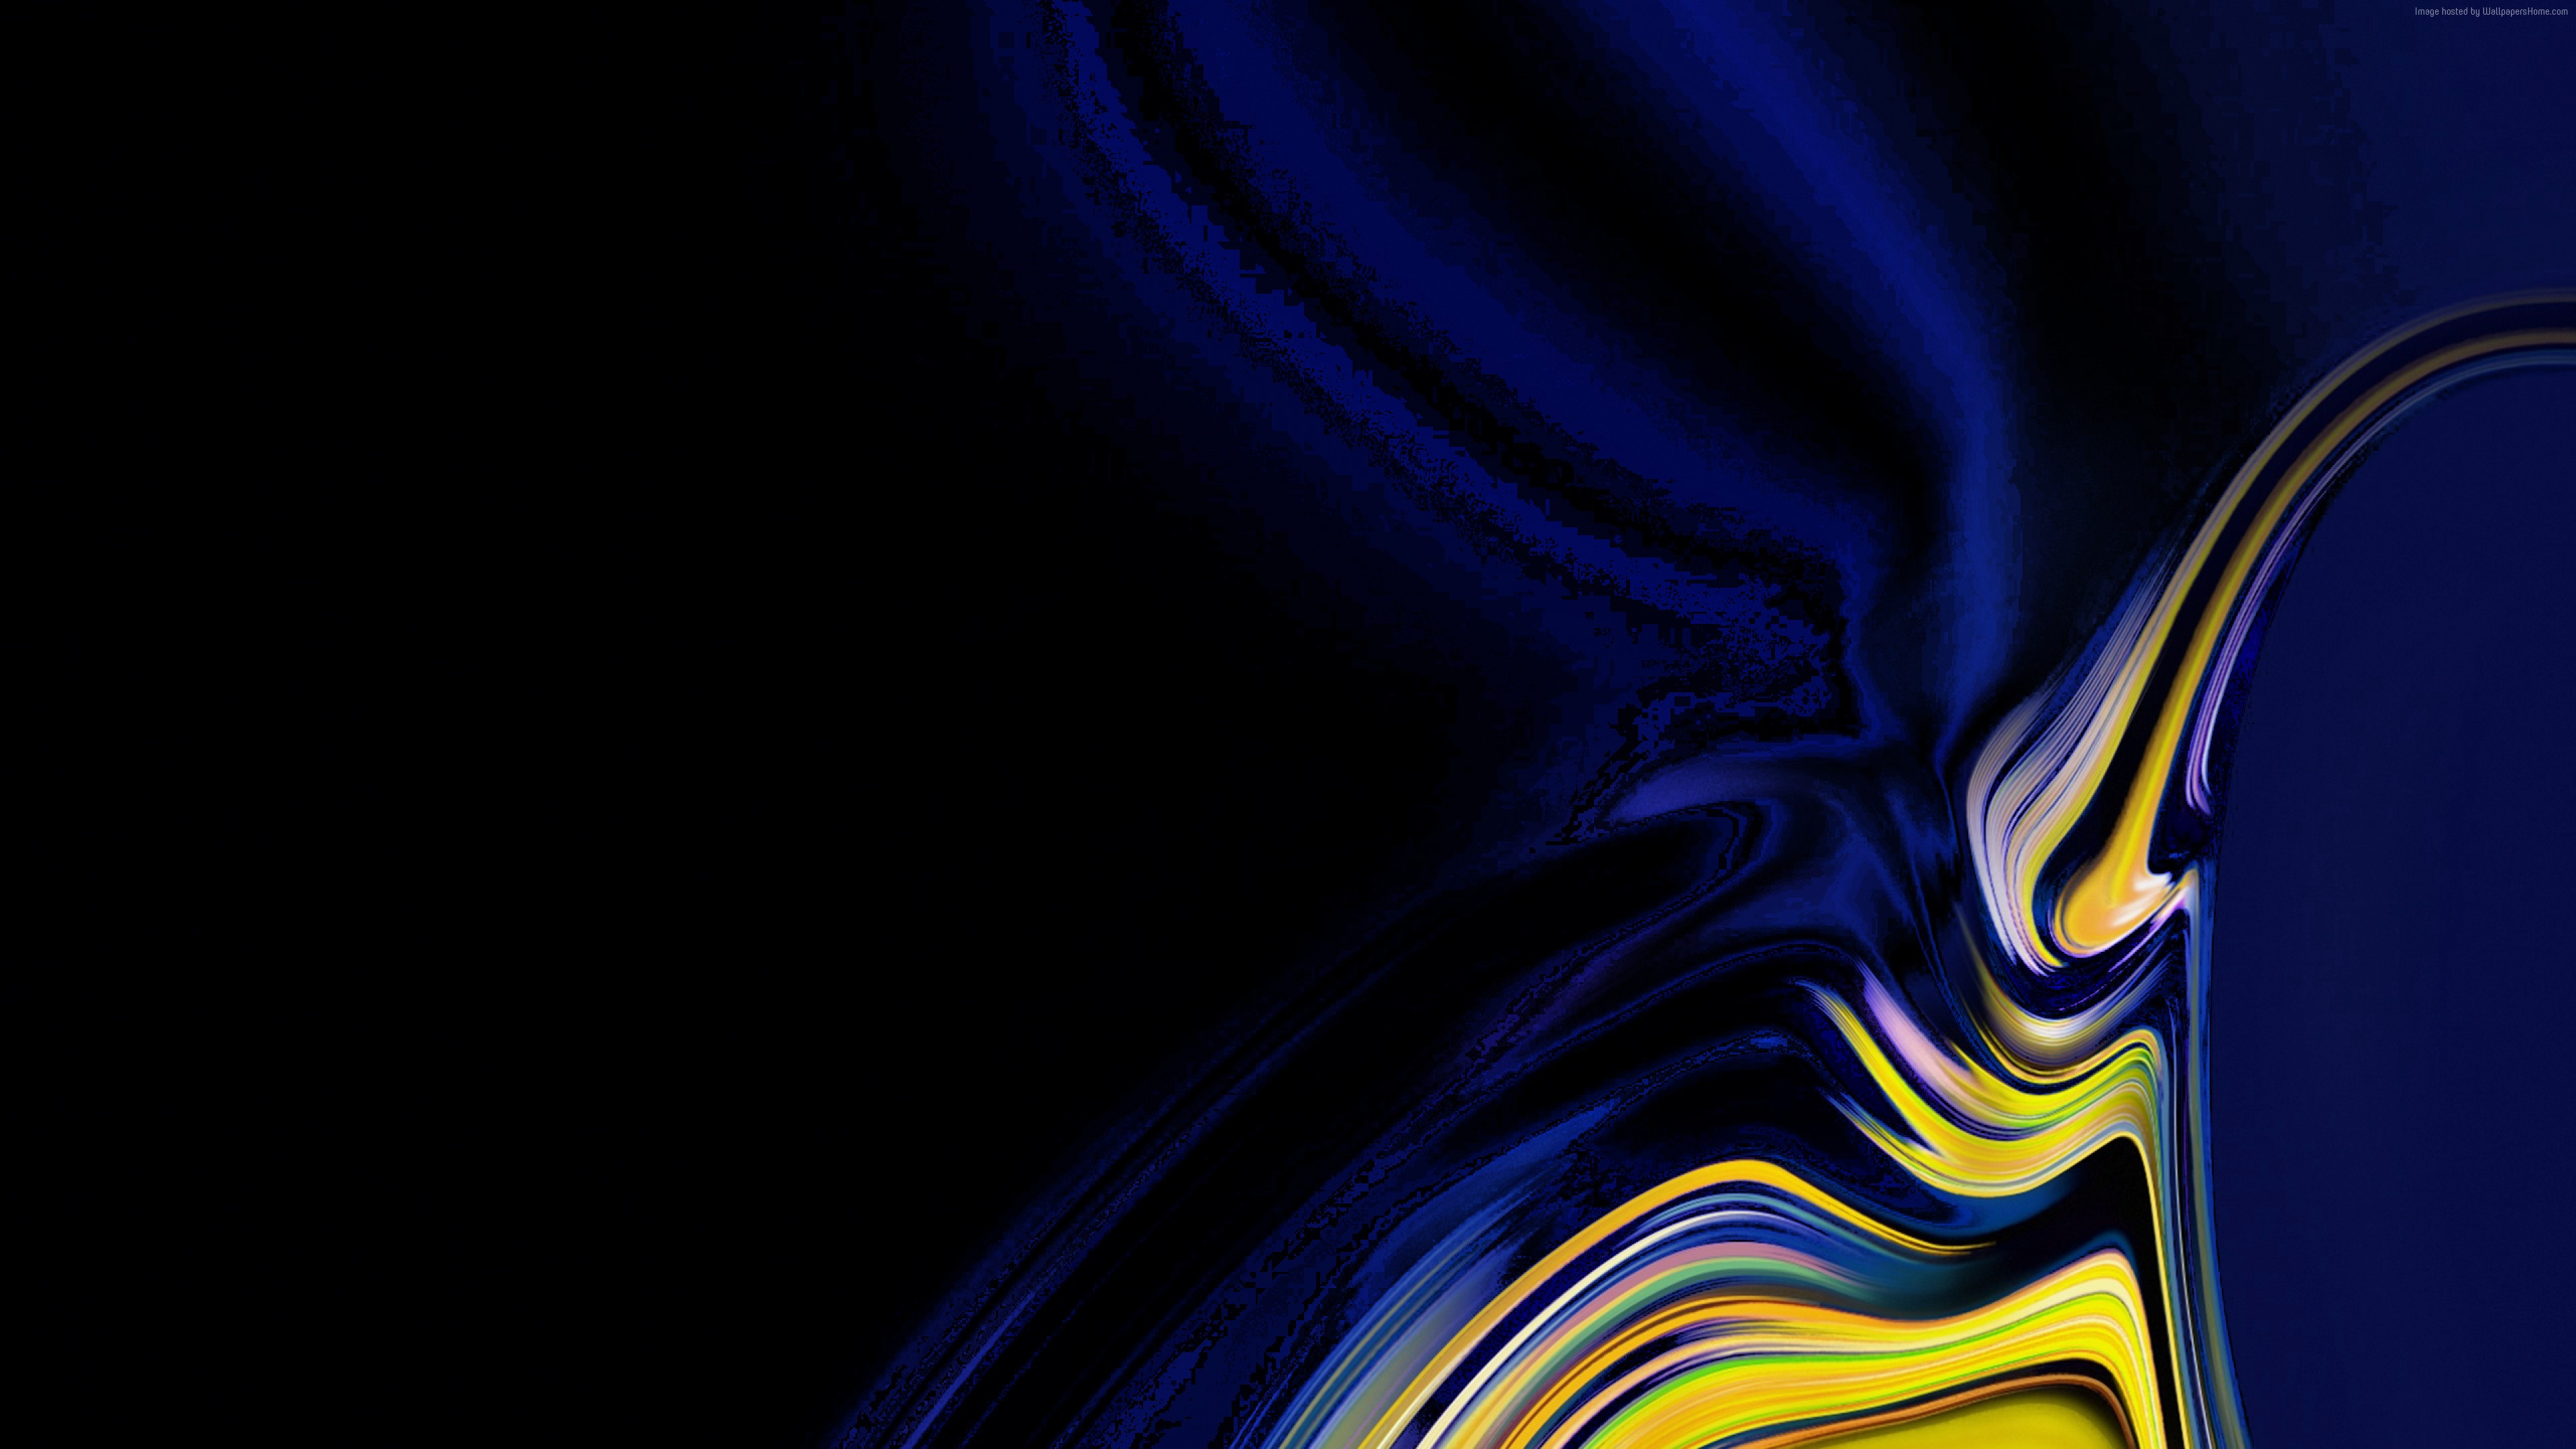 samsung galaxy wallpaper,blue,cobalt blue,water,electric blue,yellow